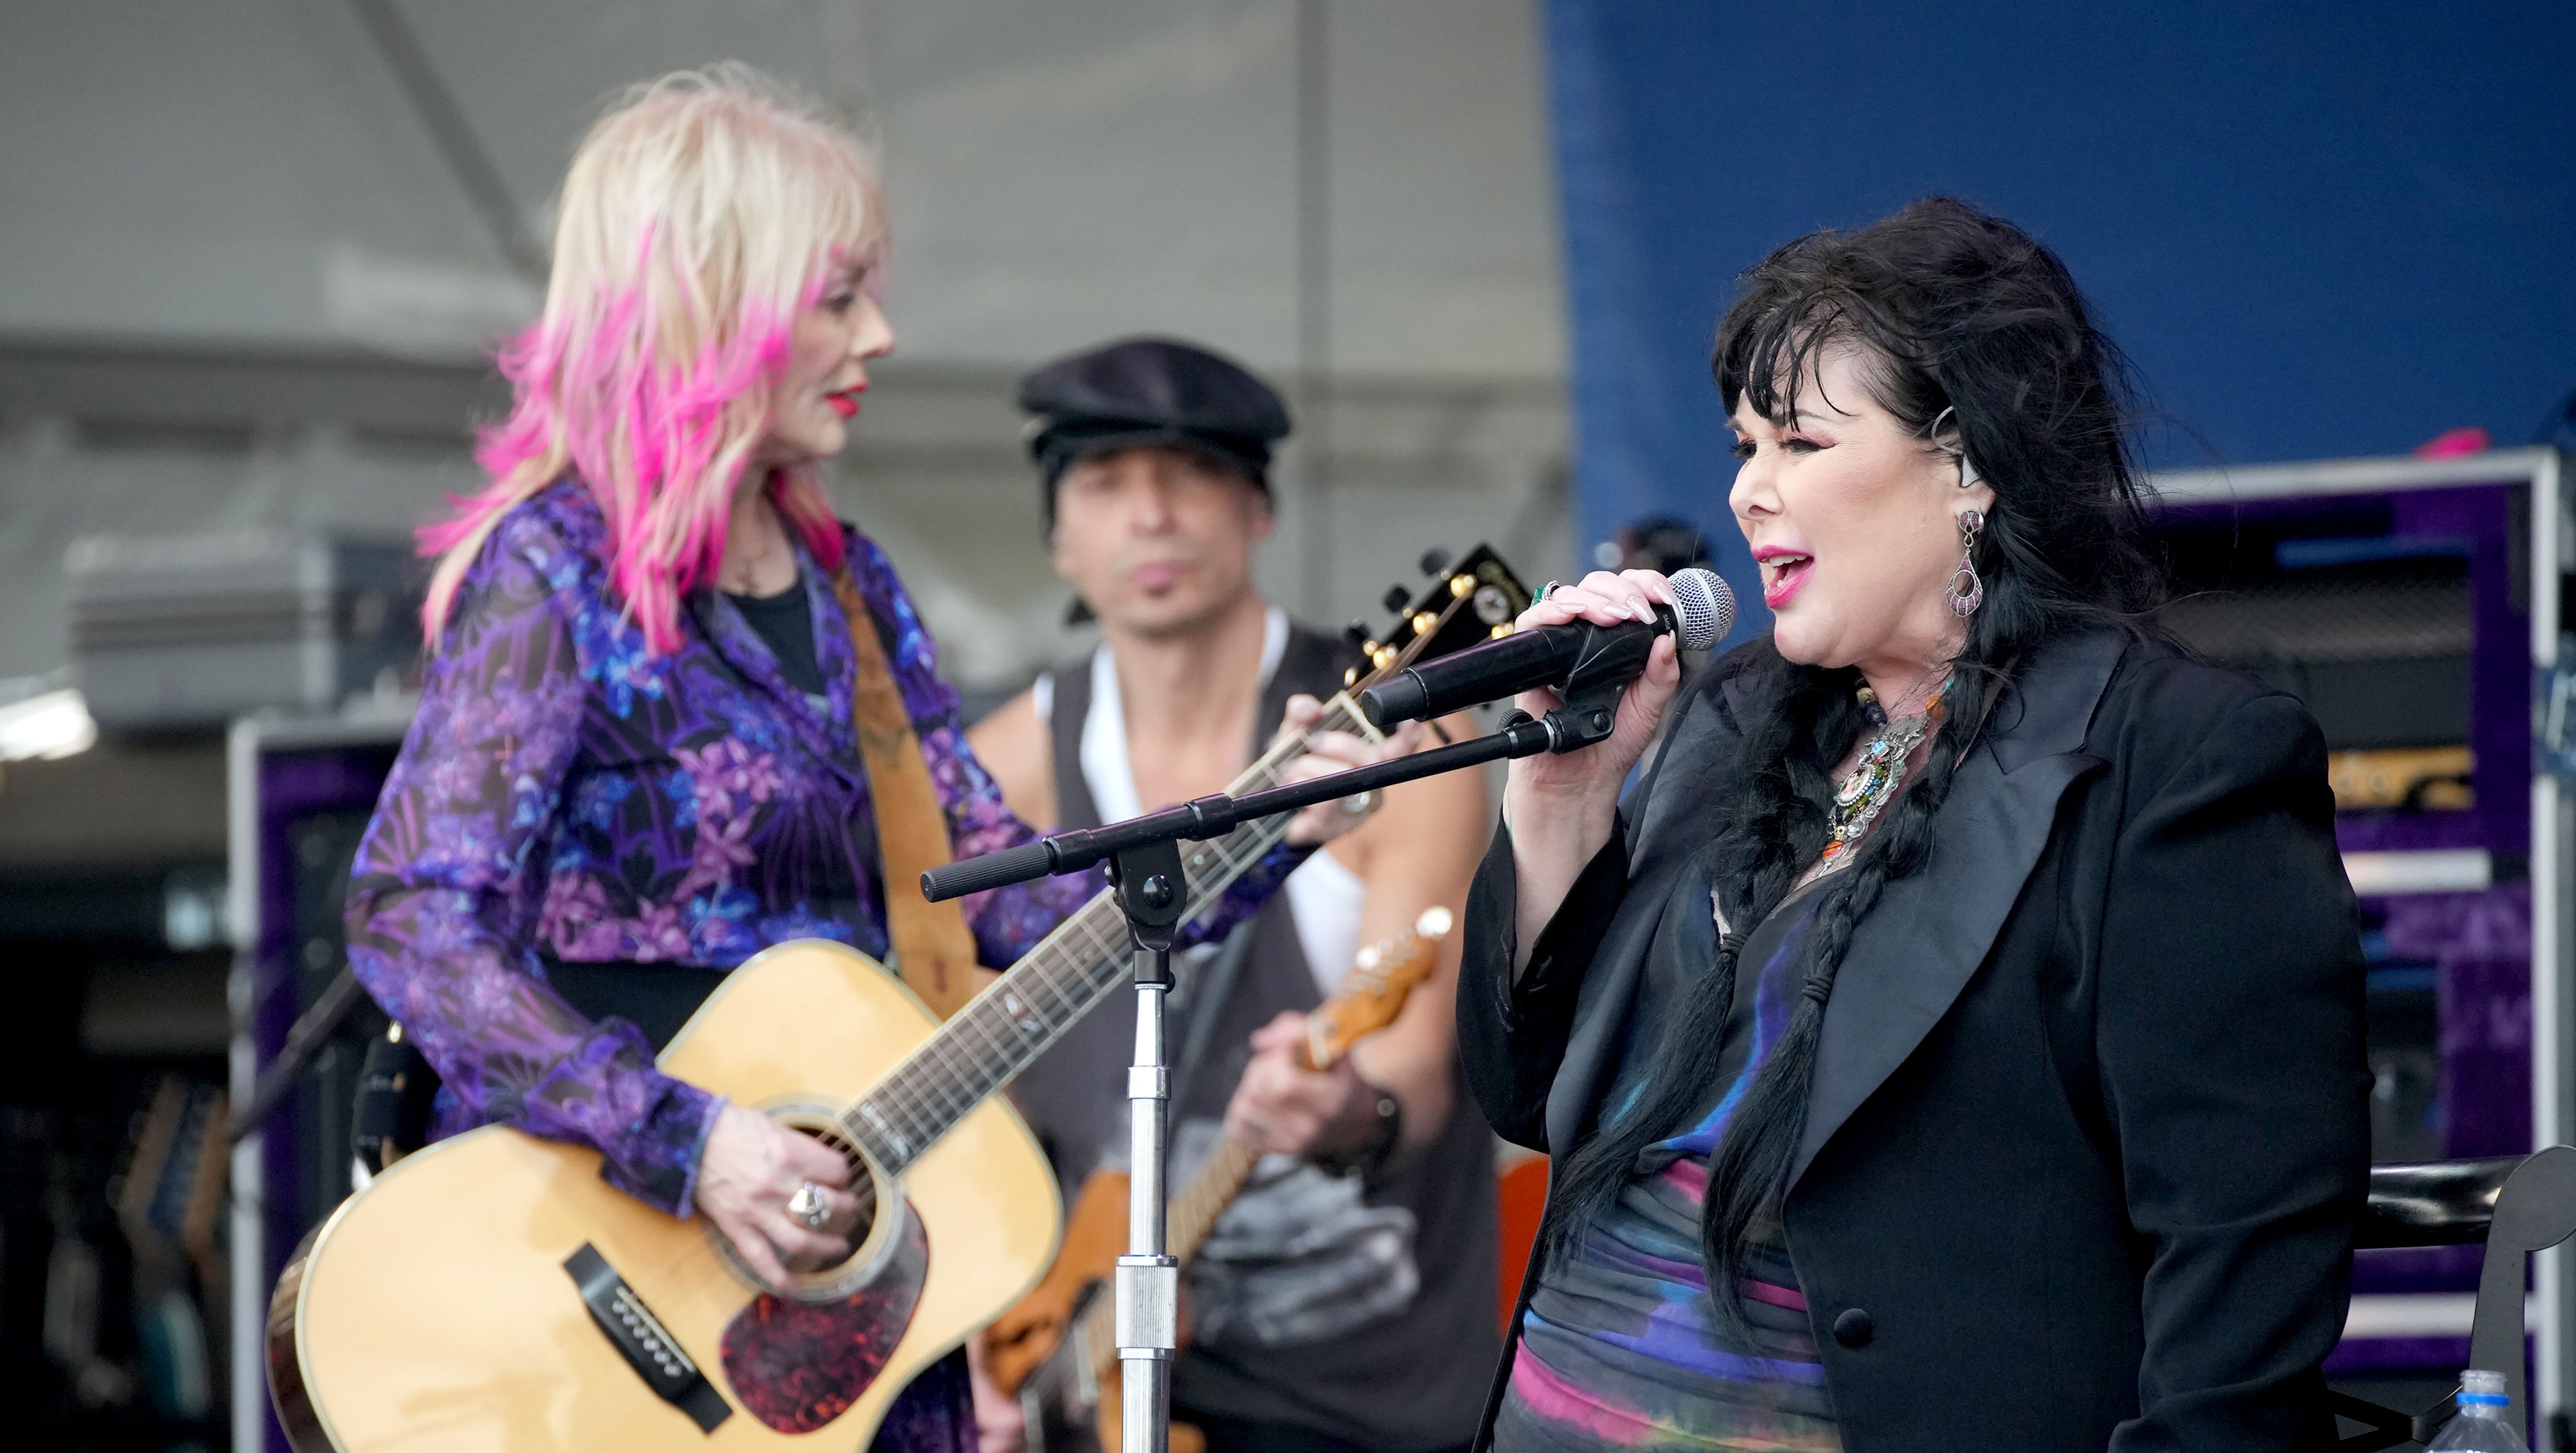 Heart concert at Fenway Park postponed after lead singer reveals cancer diagnosis